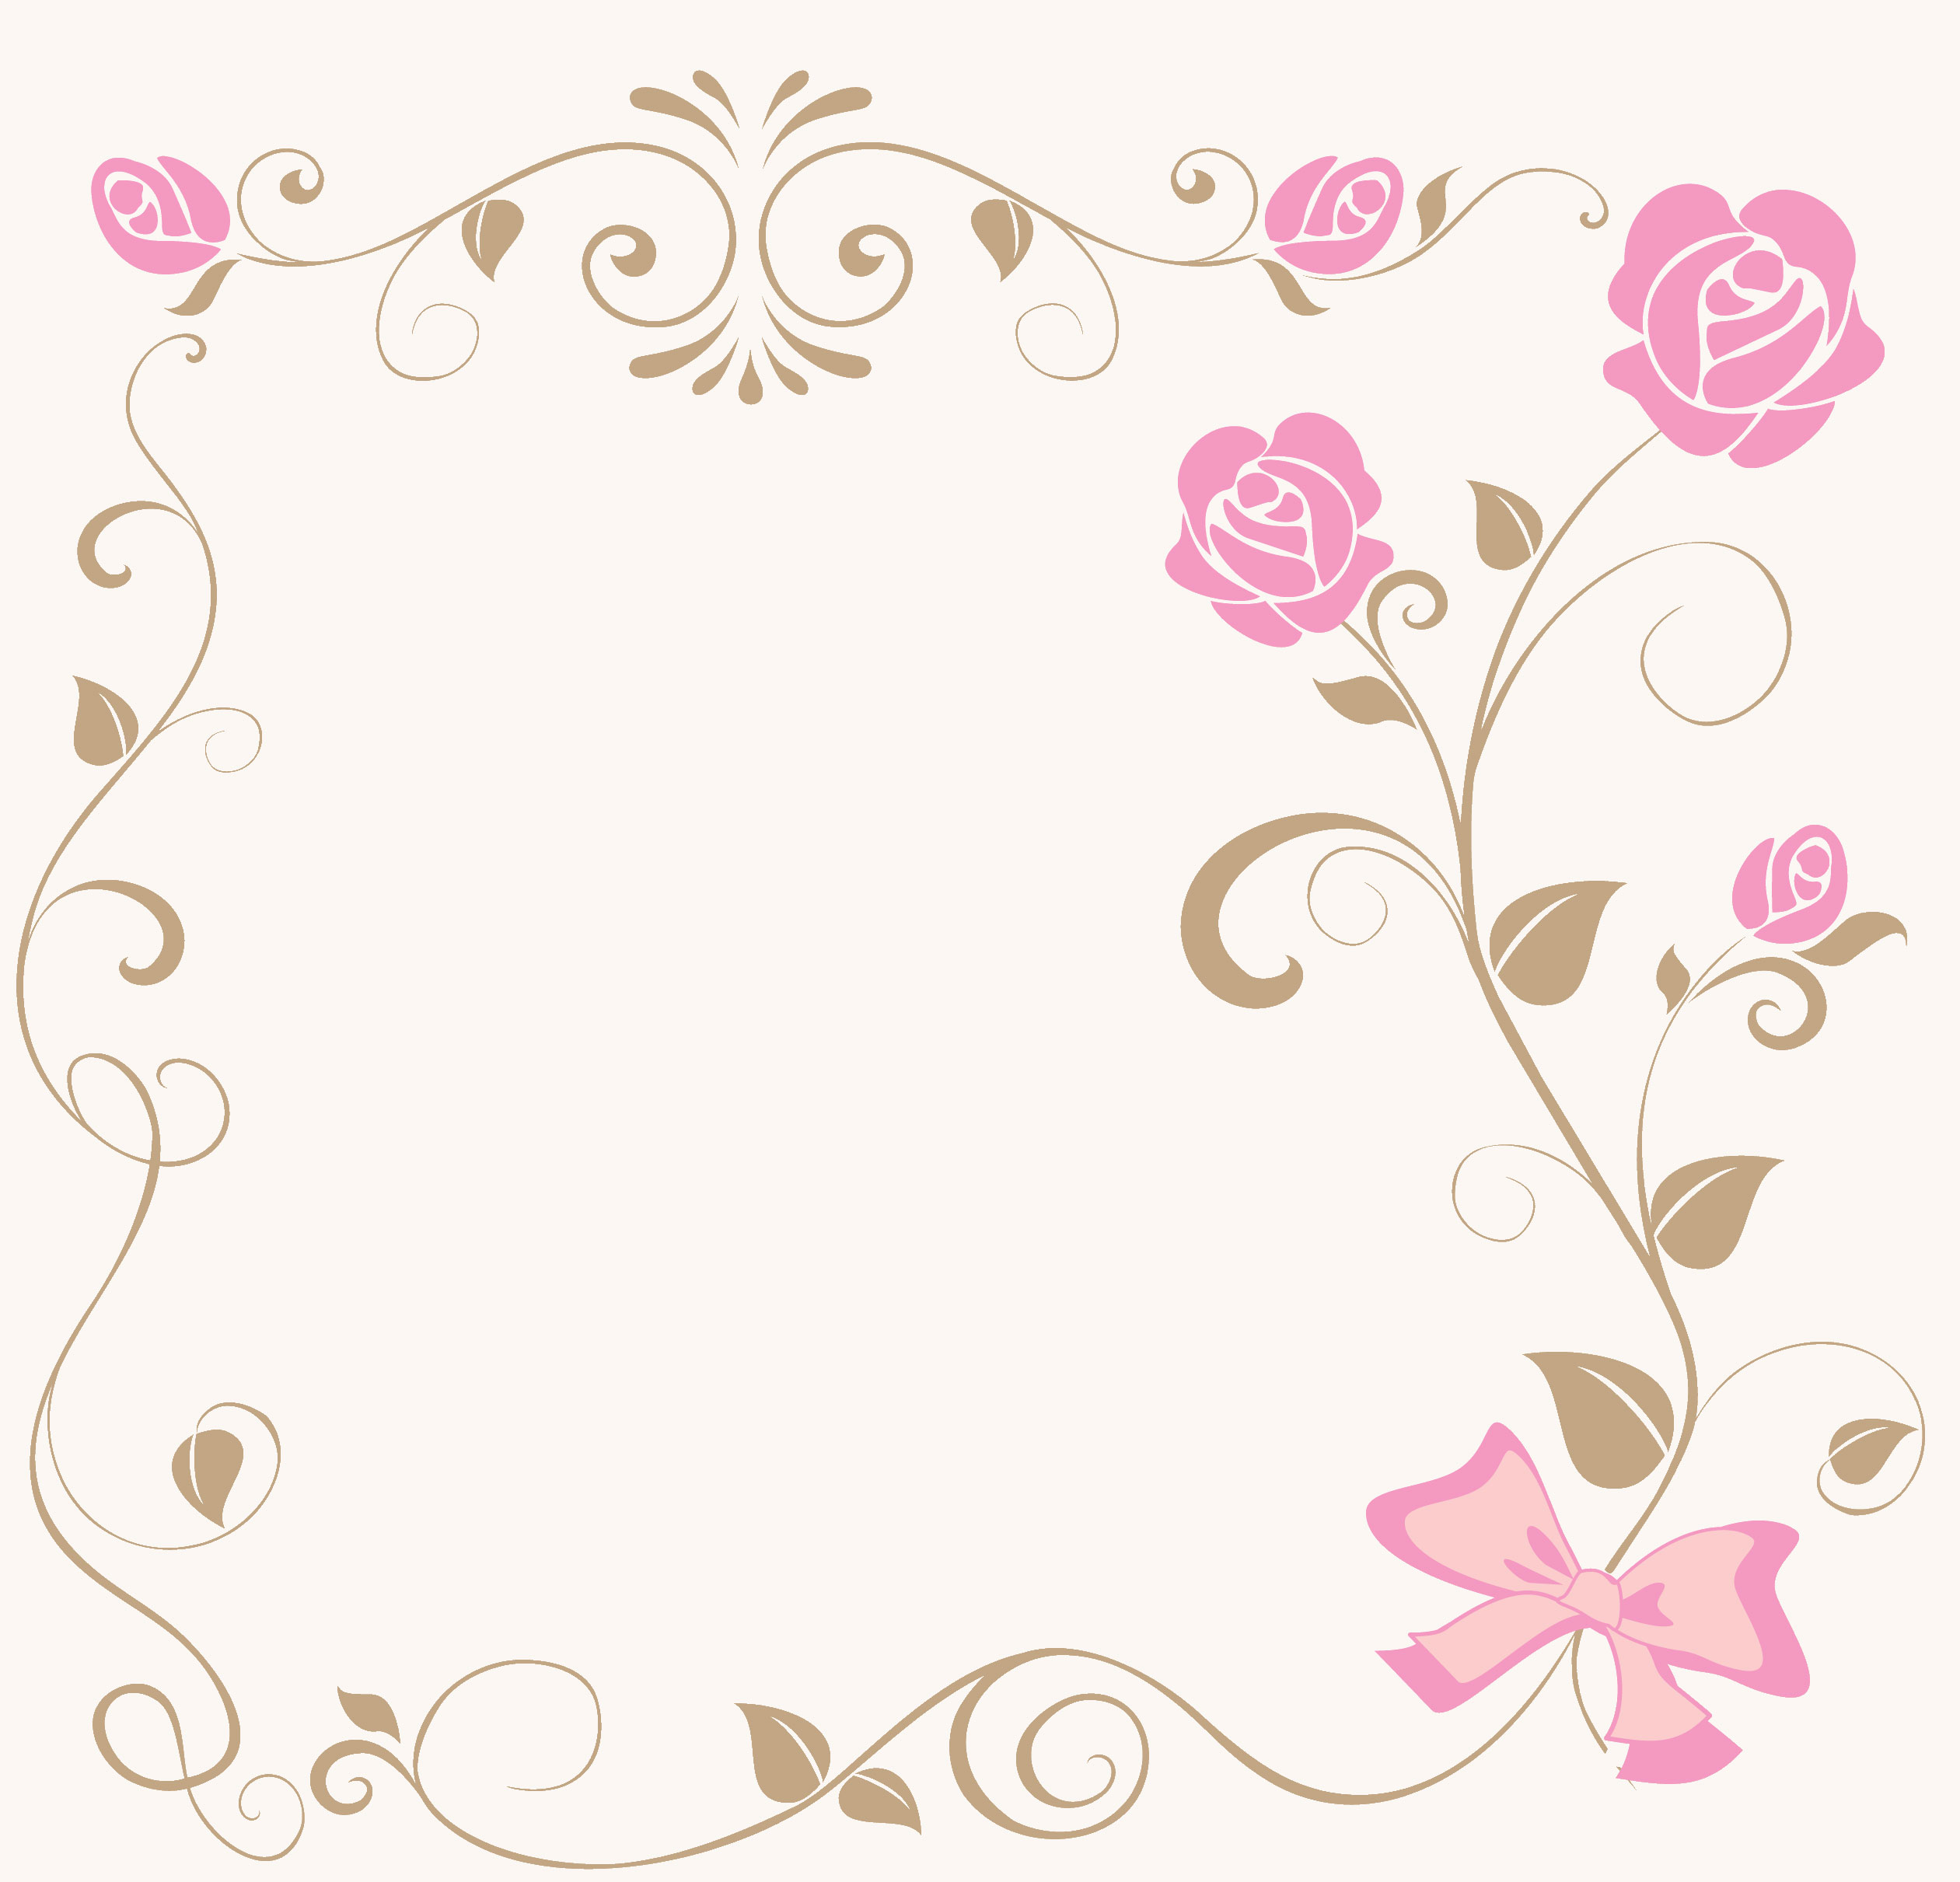 壁紙 背景イラスト 花のフレーム 外枠 No 214 茎フレーム ピンクバラ